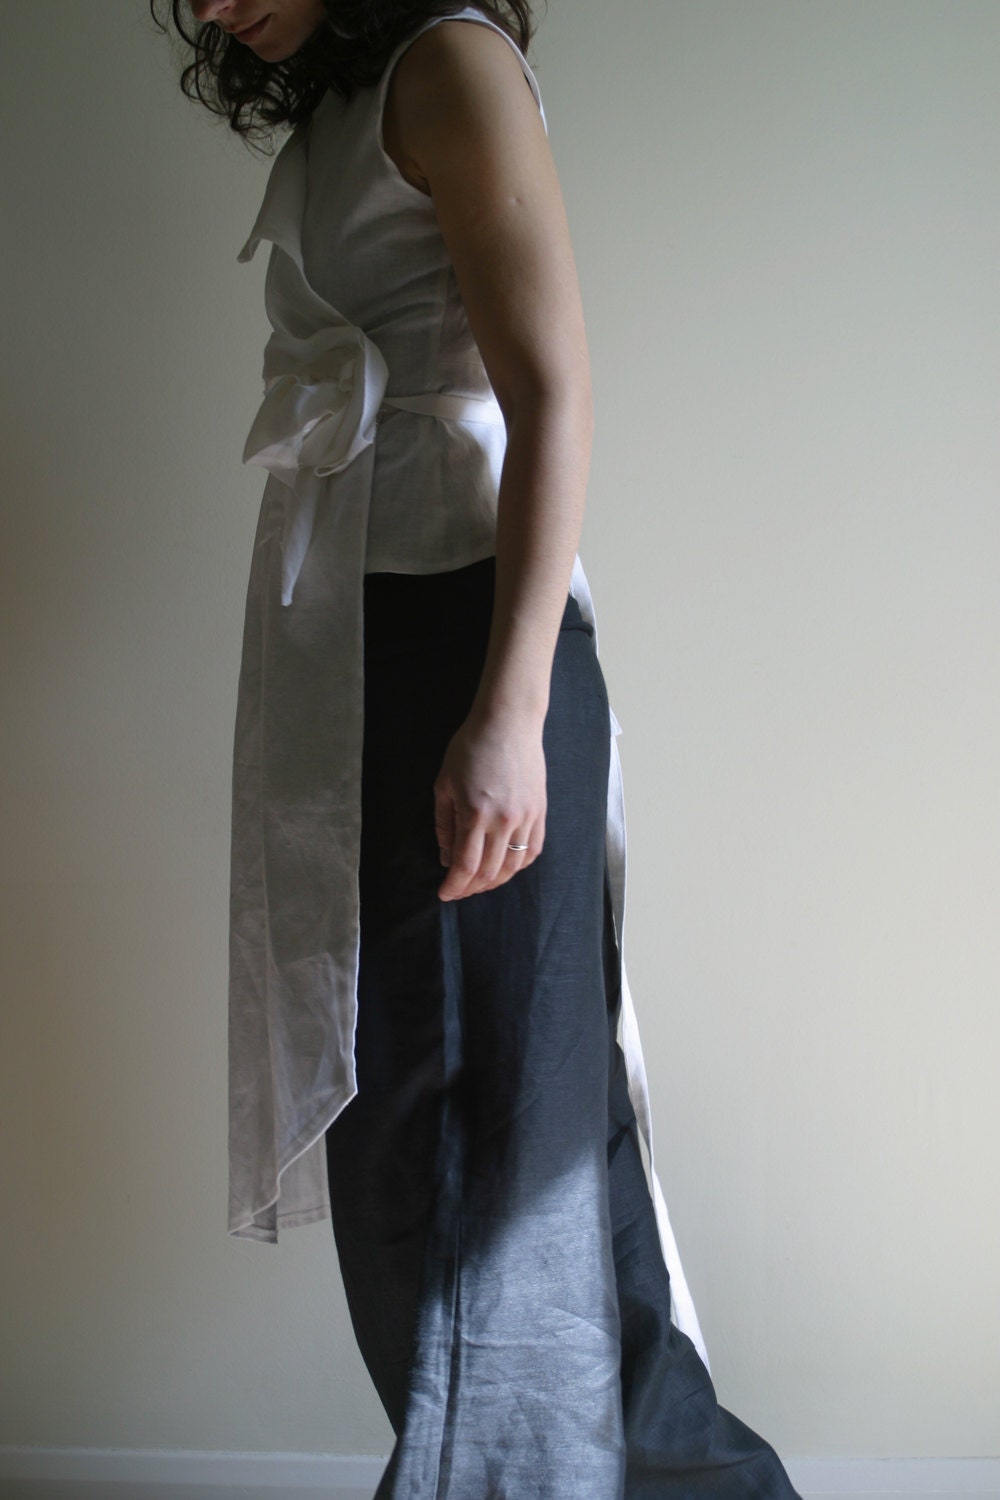 Linen Wrap Dress Blouse by NervousWardrobe on Etsy